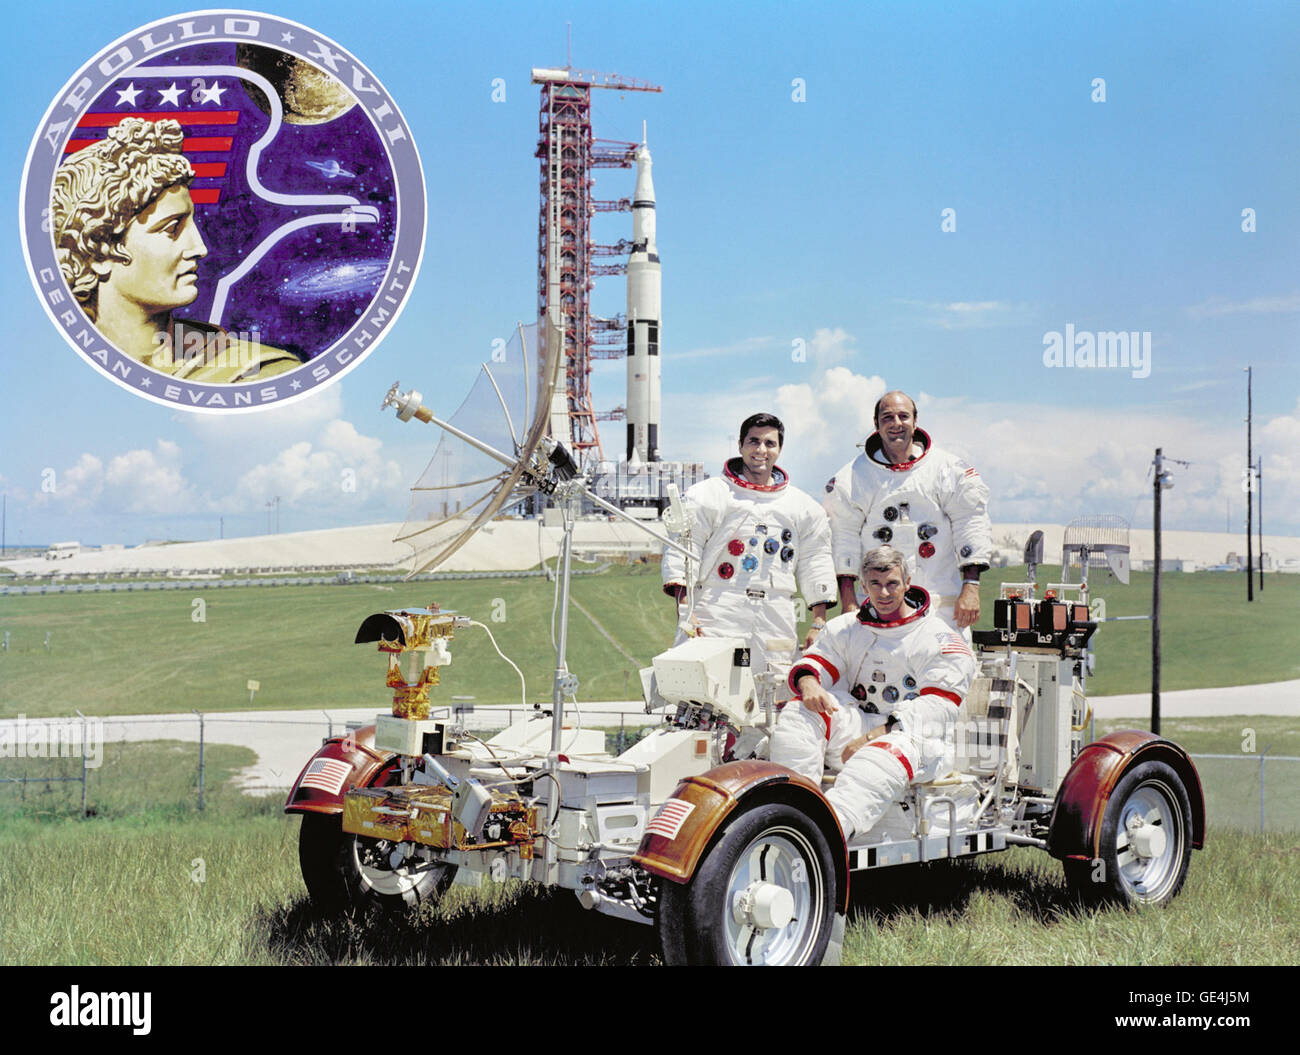 (30 settembre 1972) Il primo equipaggio per l'Apollo 17 atterraggio lunare di missione sono: Comandante Eugene A. Cernan (seduto), il pilota del modulo di comando Ronald E. Evans (permanente sulla destra), e il Modulo Lunare pilota, Harrison H. Schmitt. Essi vengono fotografate con un Lunar veicolo itinerante (LRV) formatore. Cernan e Schmitt utilizzerà un LRV durante la loro esplorazione del Taurus-Littrow landing site. L'Apollo 17 Saturn V Moon Rocket è in background. Questa foto è stata scattata presso il pad A Launch Complex 39, Kennedy Space Center (KSC), Florida, l'Apollo 17 emblema è nella foto di inserire in alto a sinistra. Apollo 17 la Foto Stock